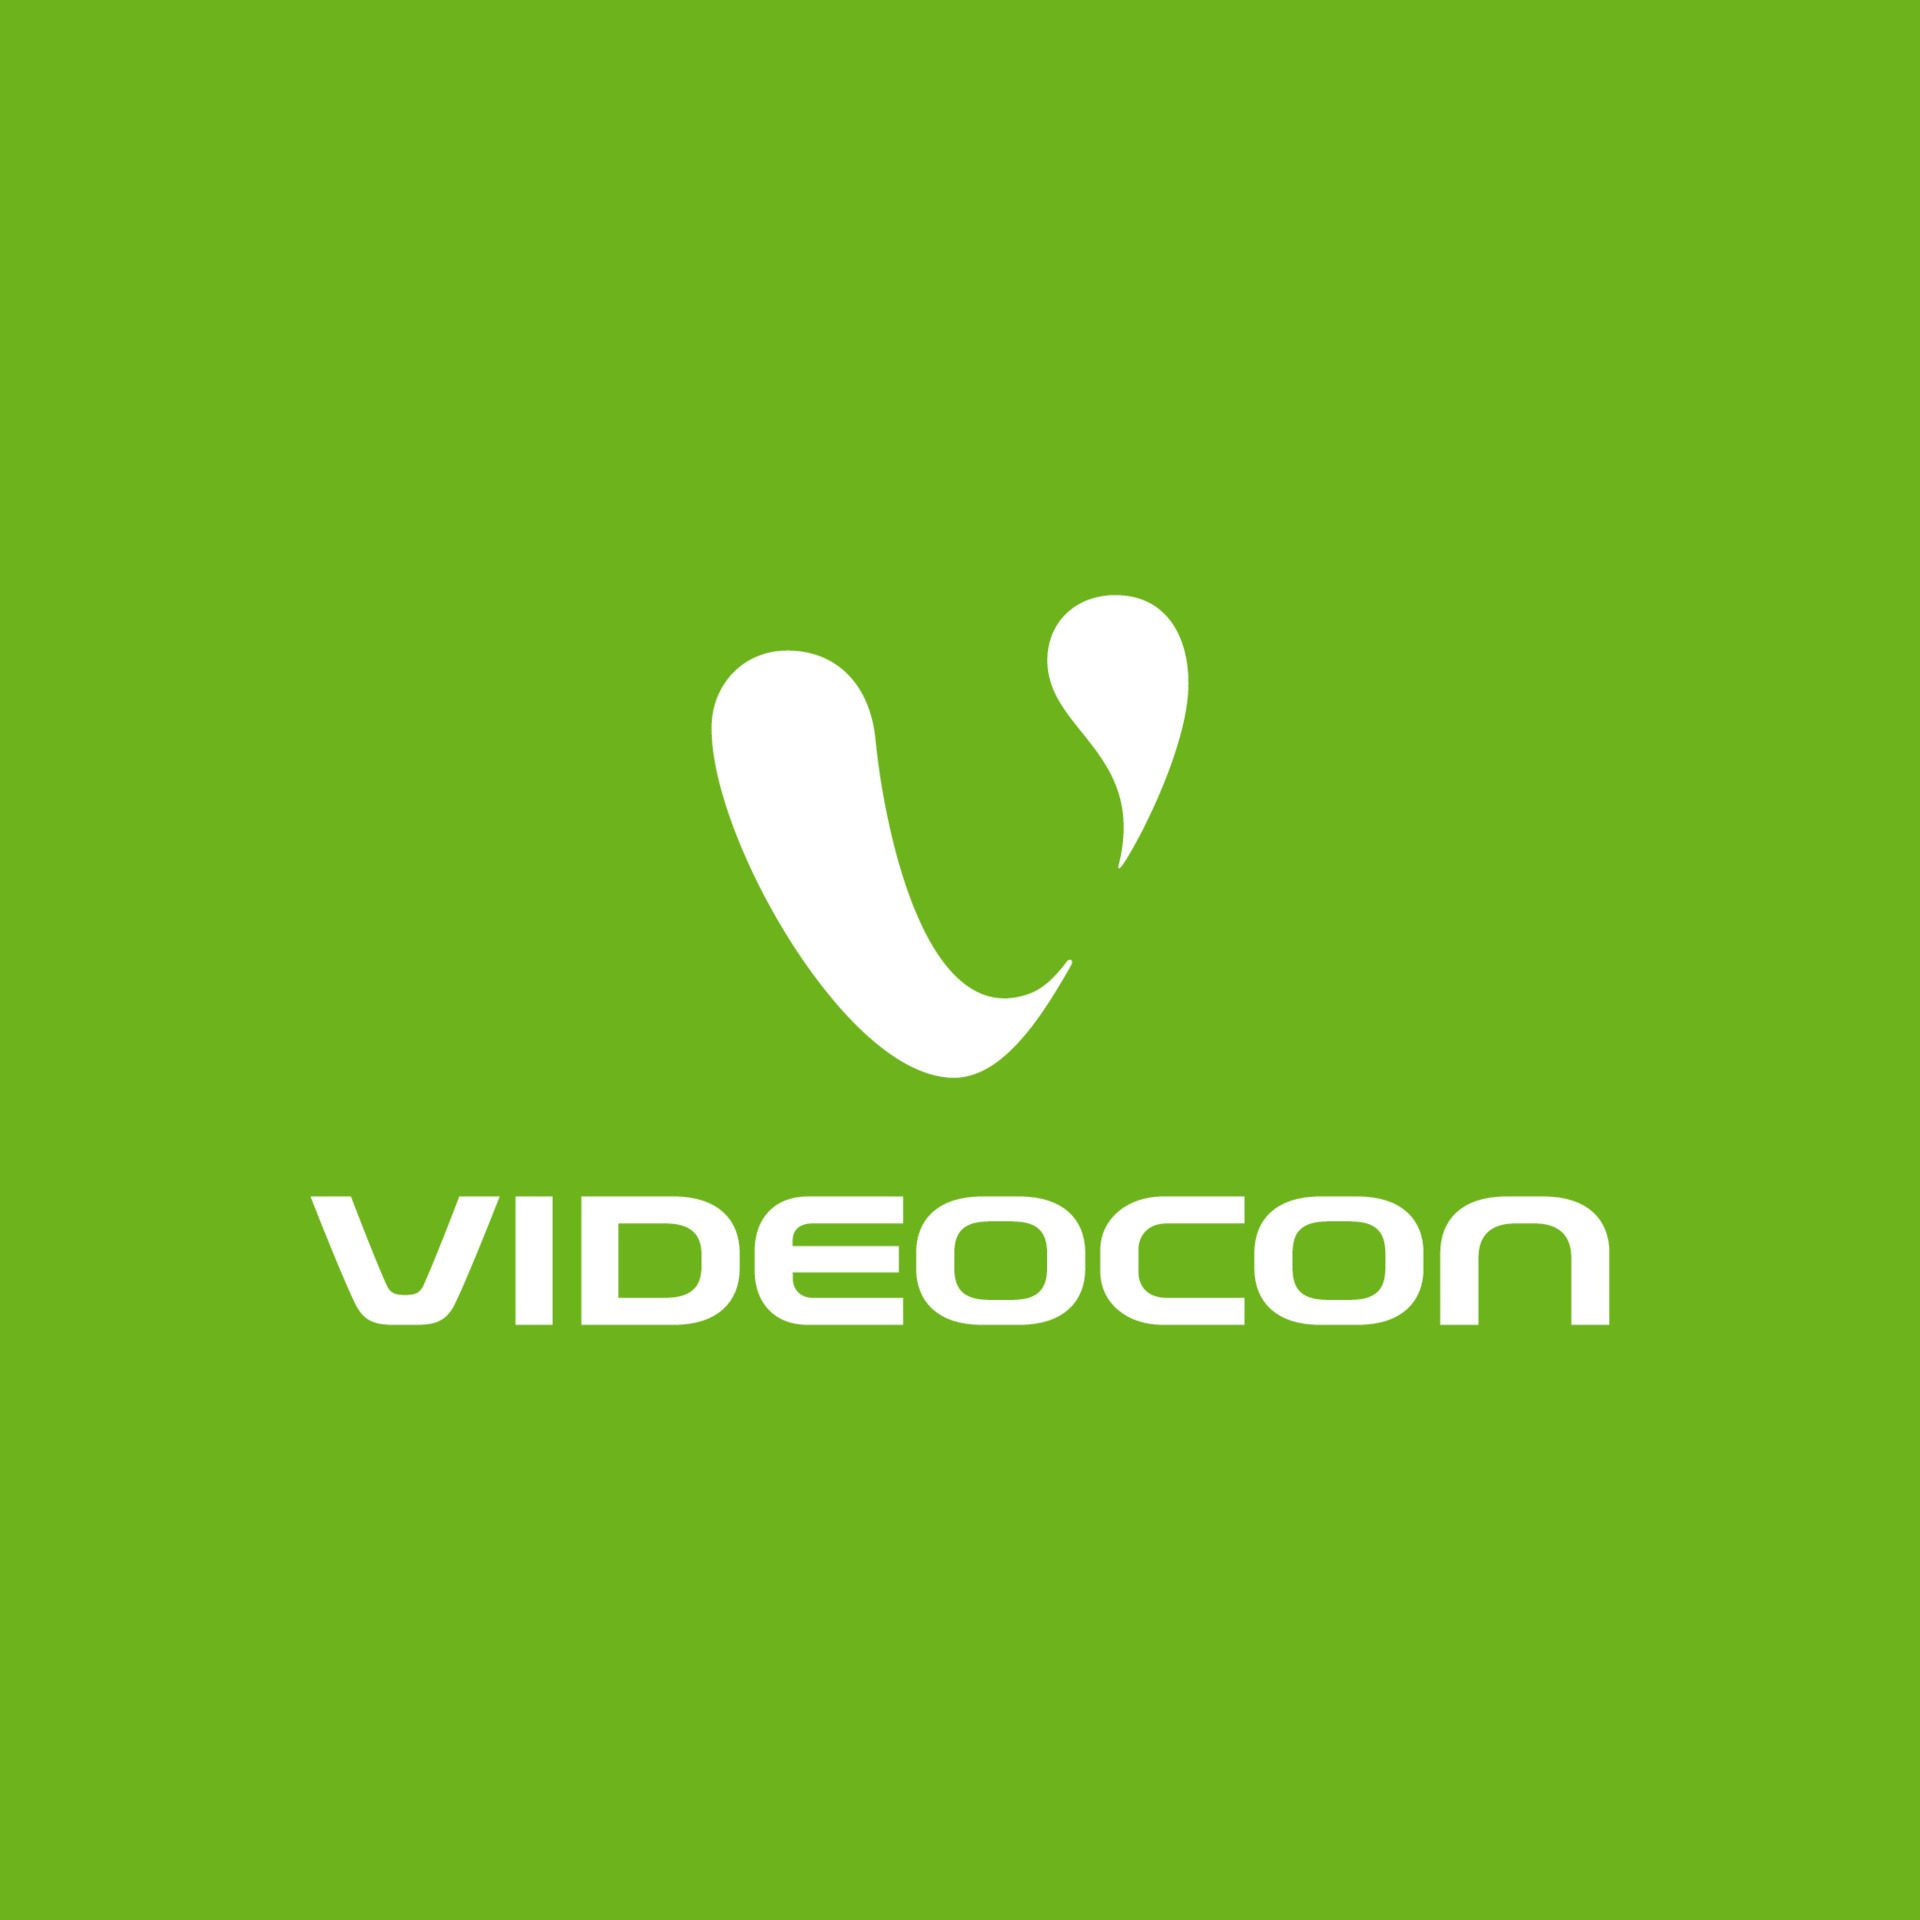 محصولات ویدیوکن videocon